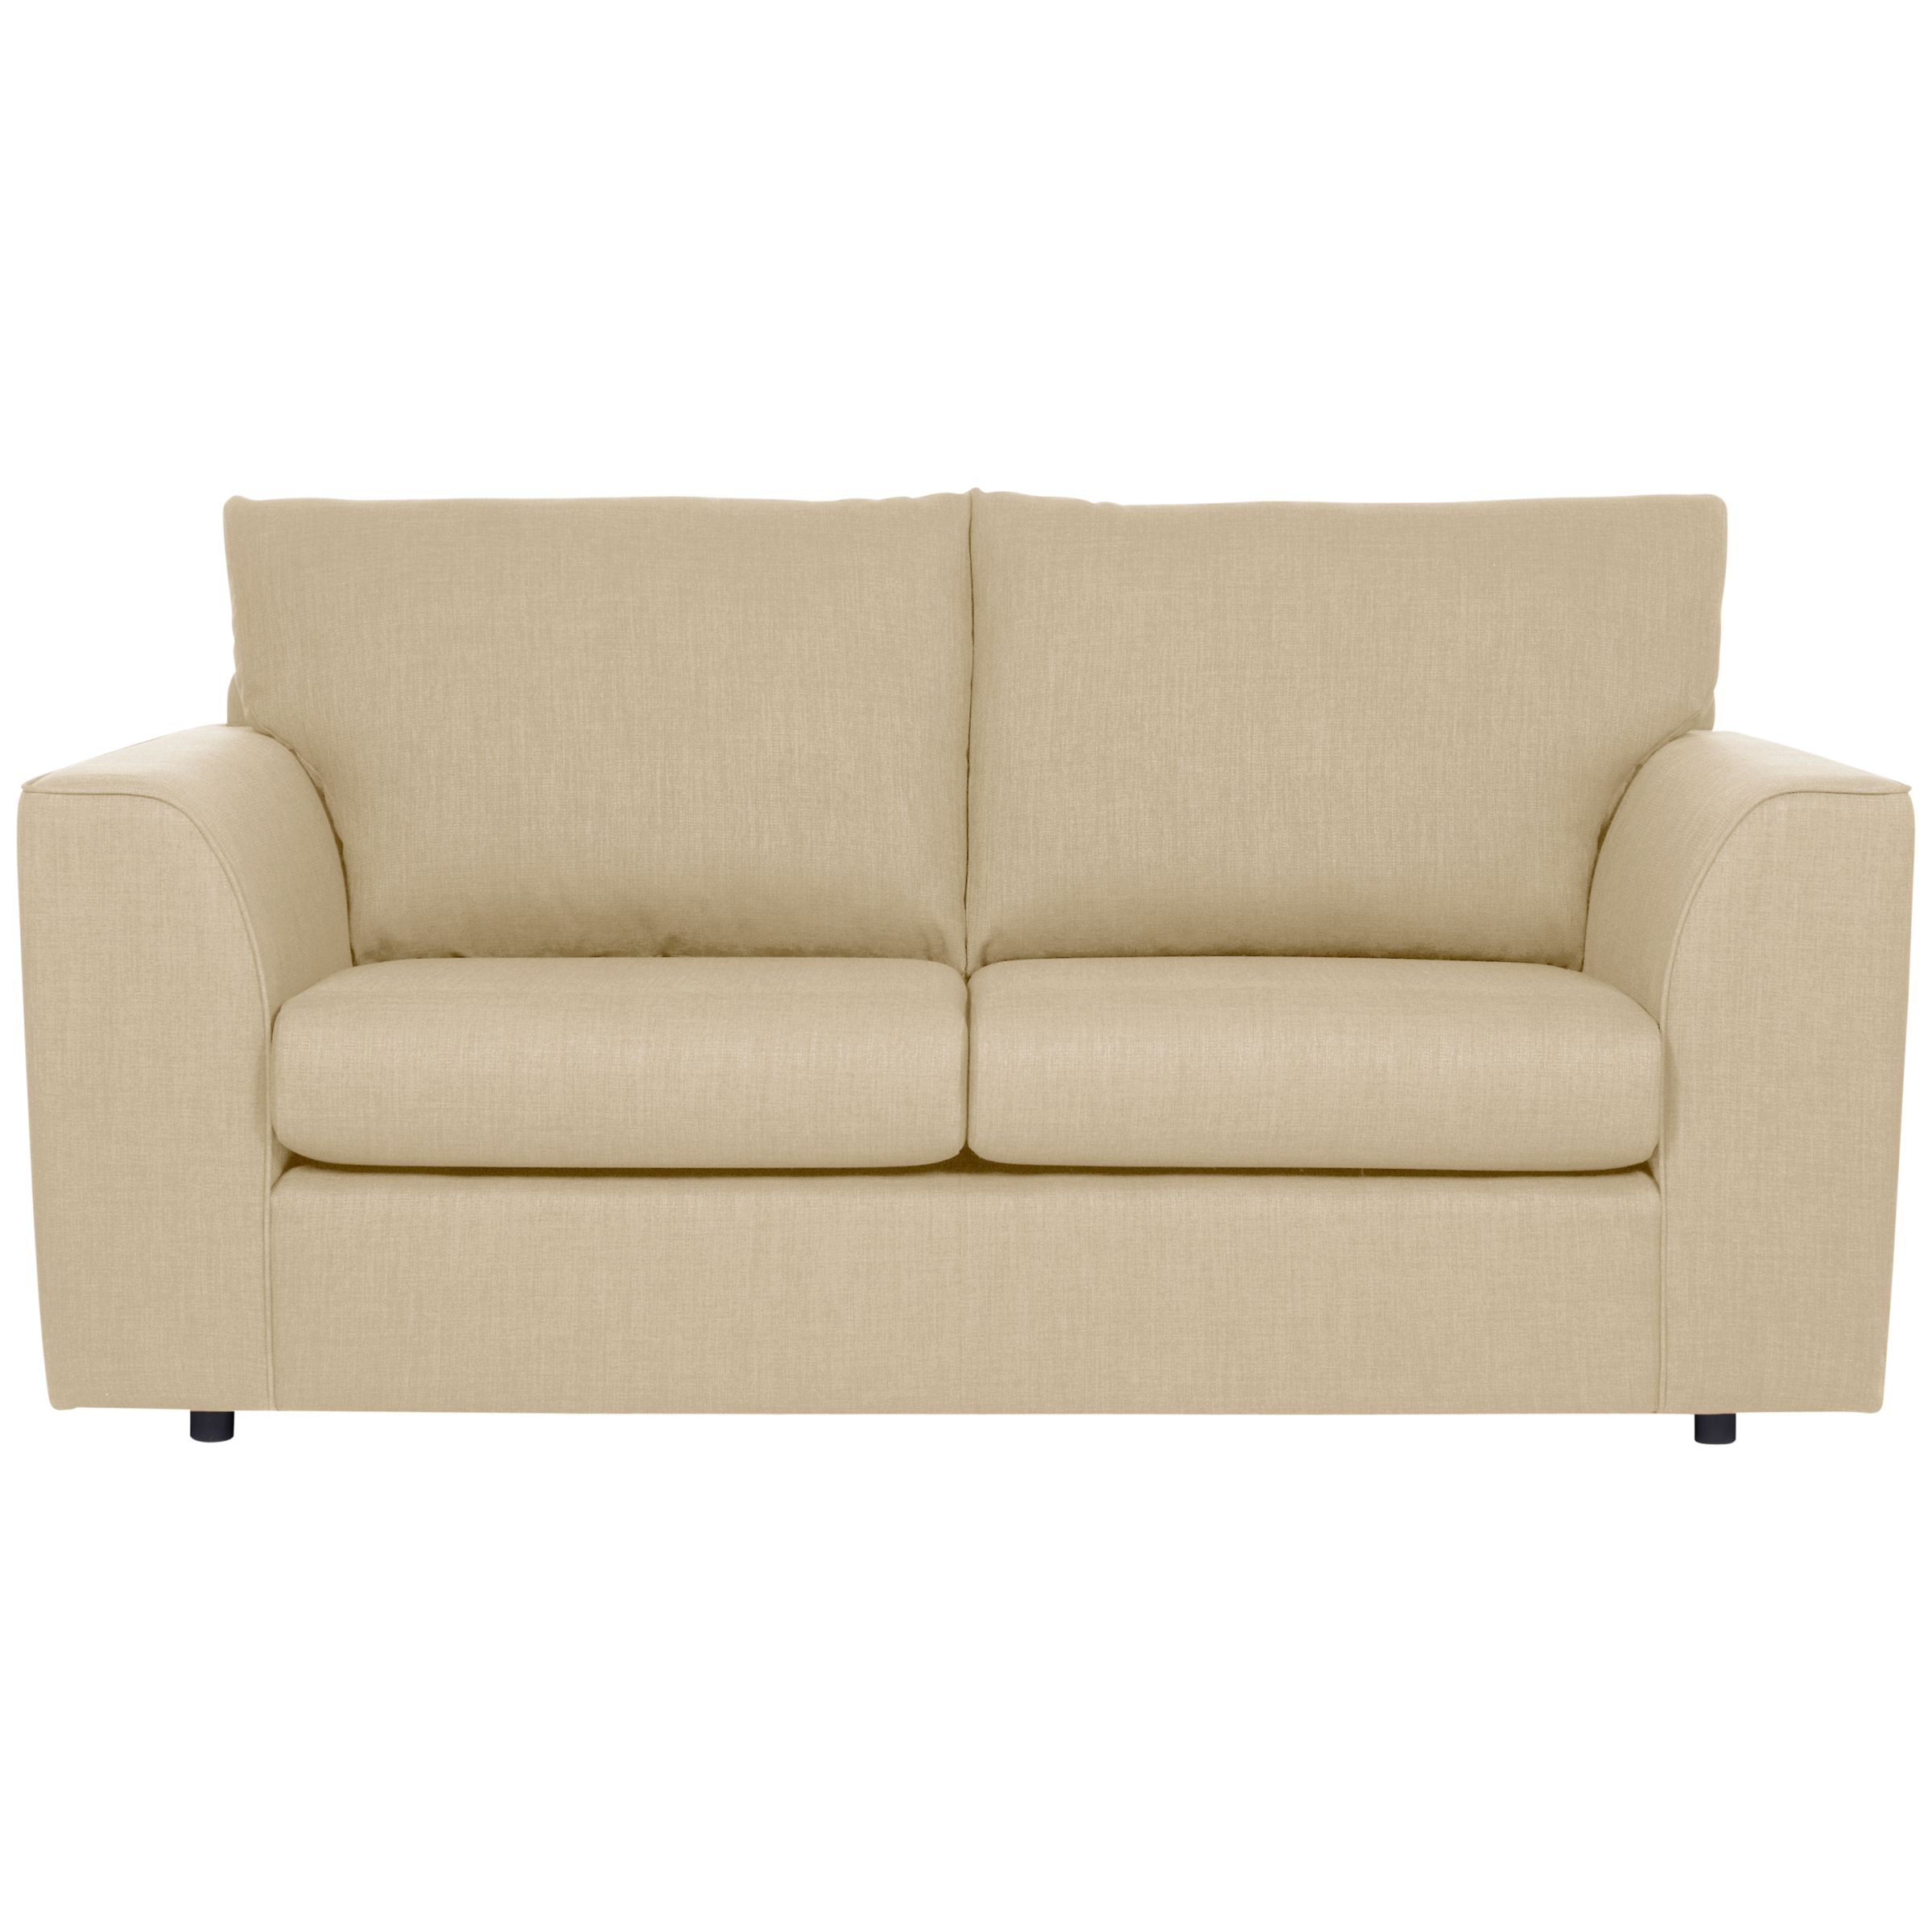 John Lewis Value Emma Medium Sofa, Beige, width 175cm